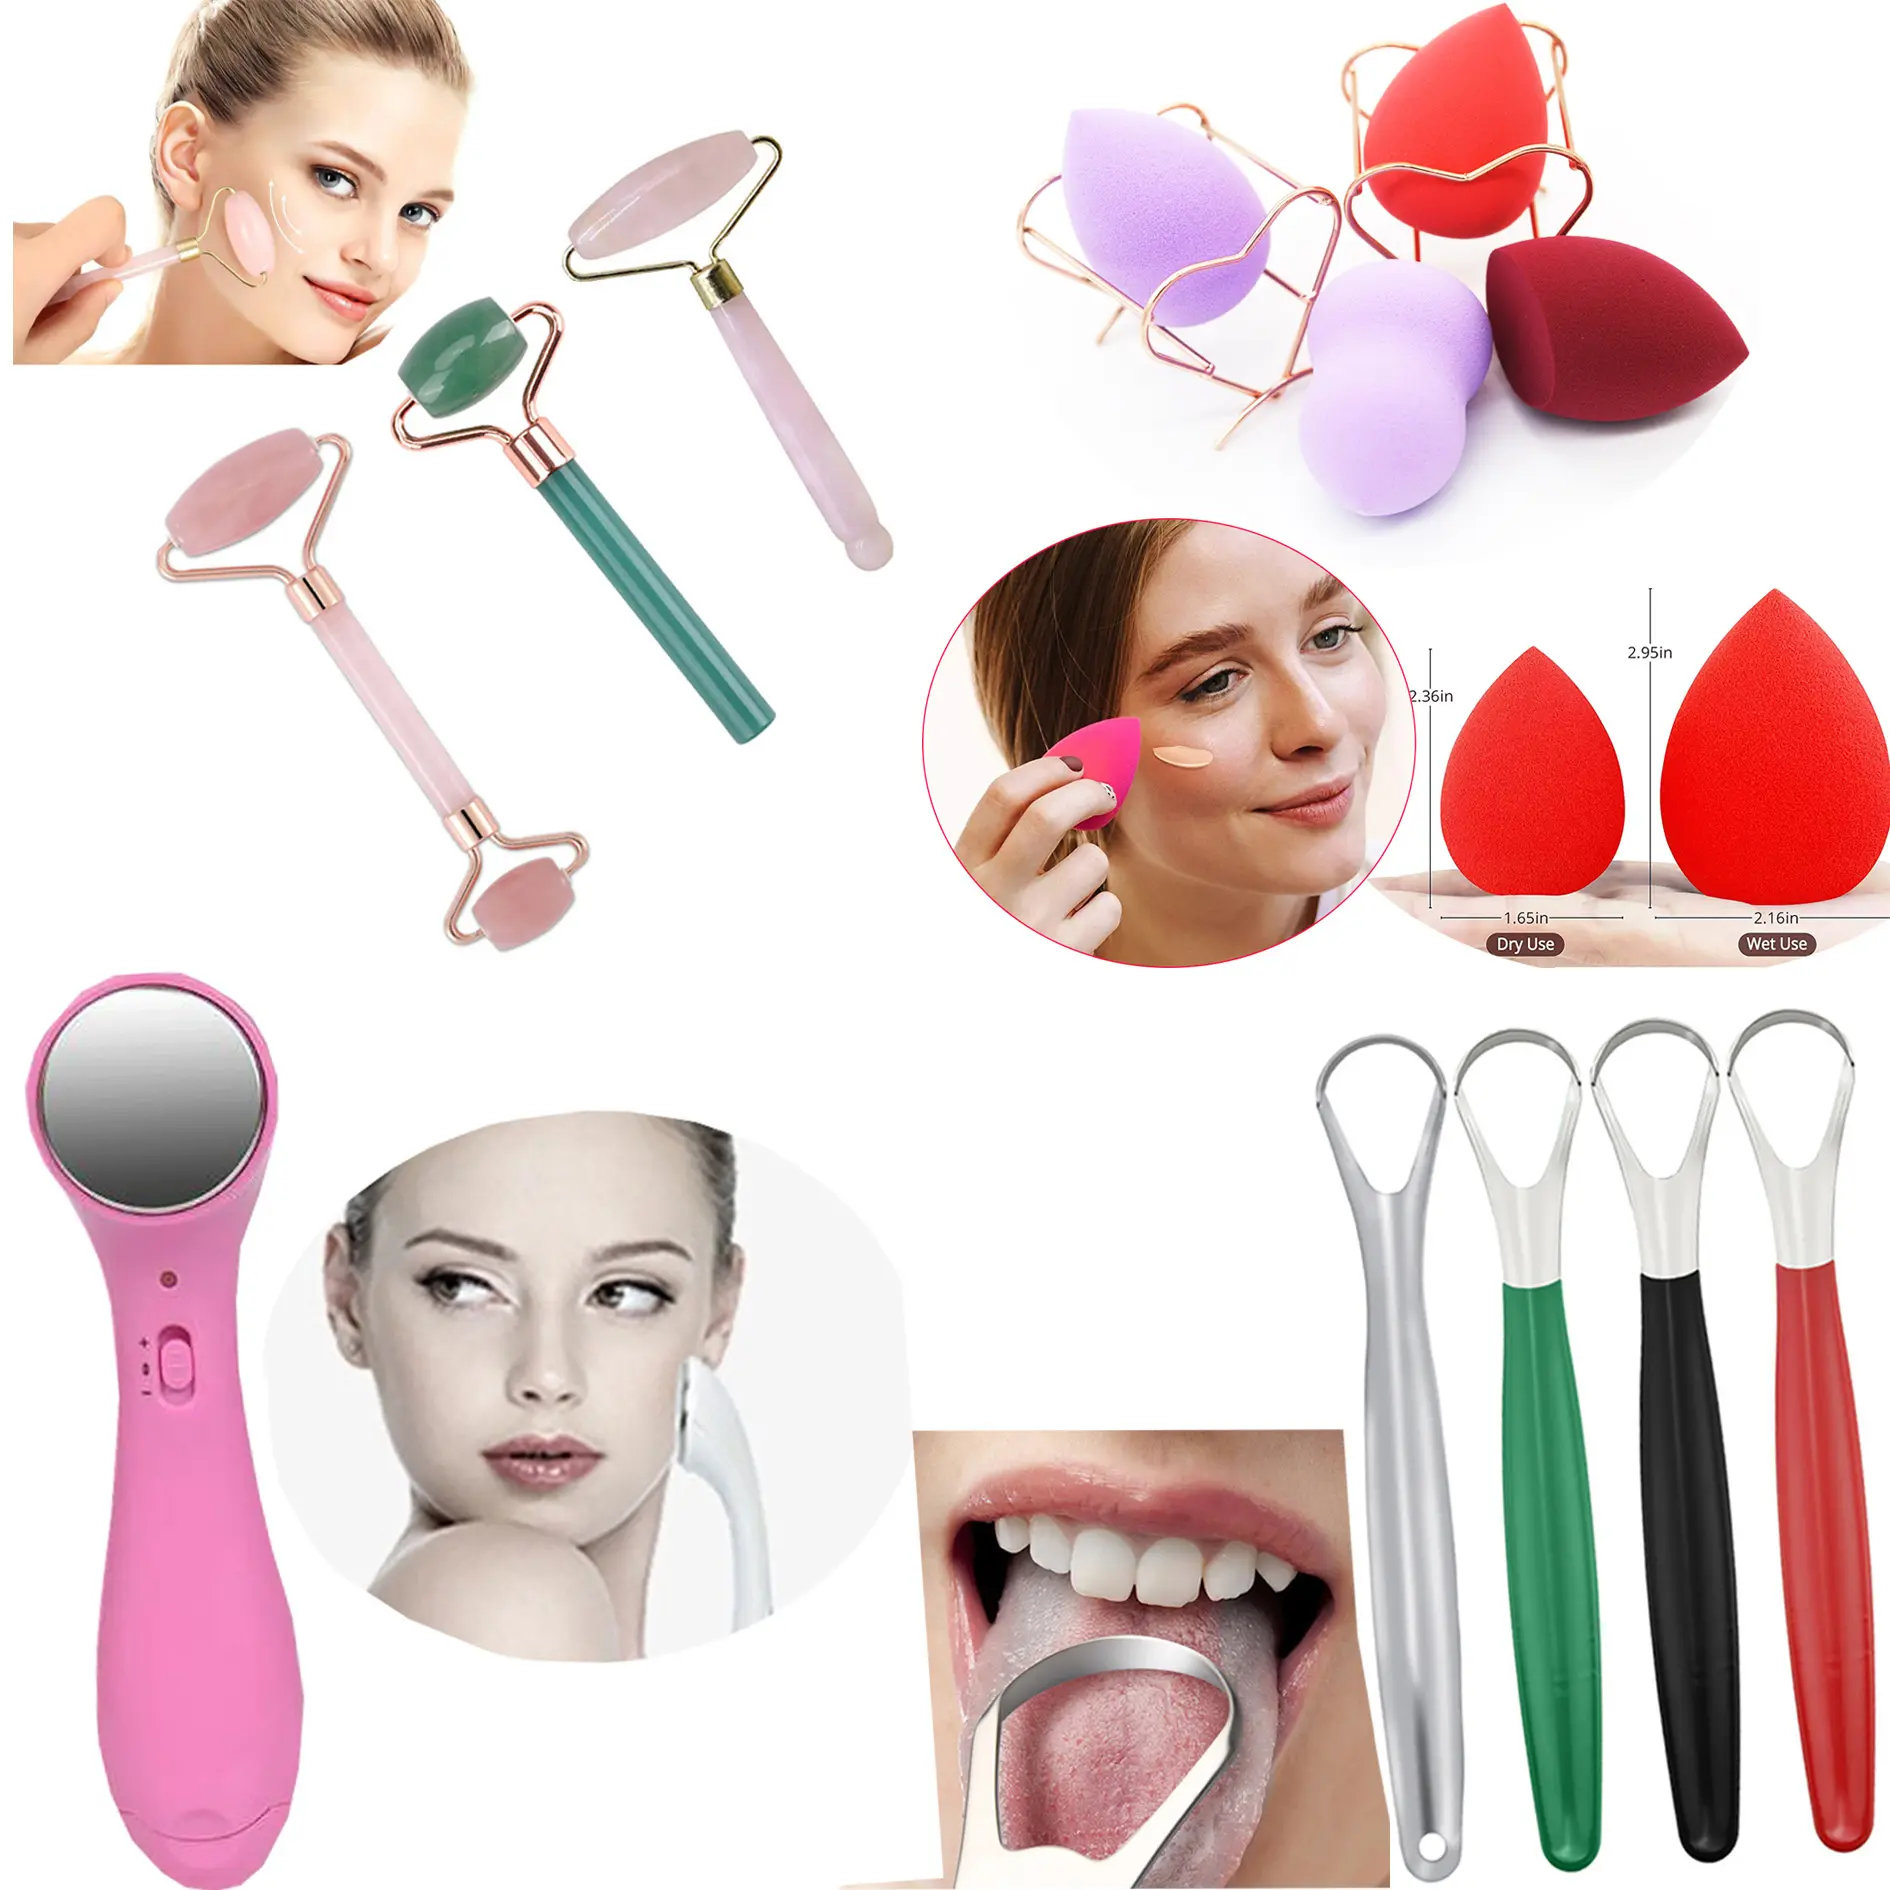 2022 Hot Verkoop Beauty En Zorg Producten Gezichtsreiniging Borstel Beauty Tools Voor Vrouw Schoonheid Persoonlijke Verzorging